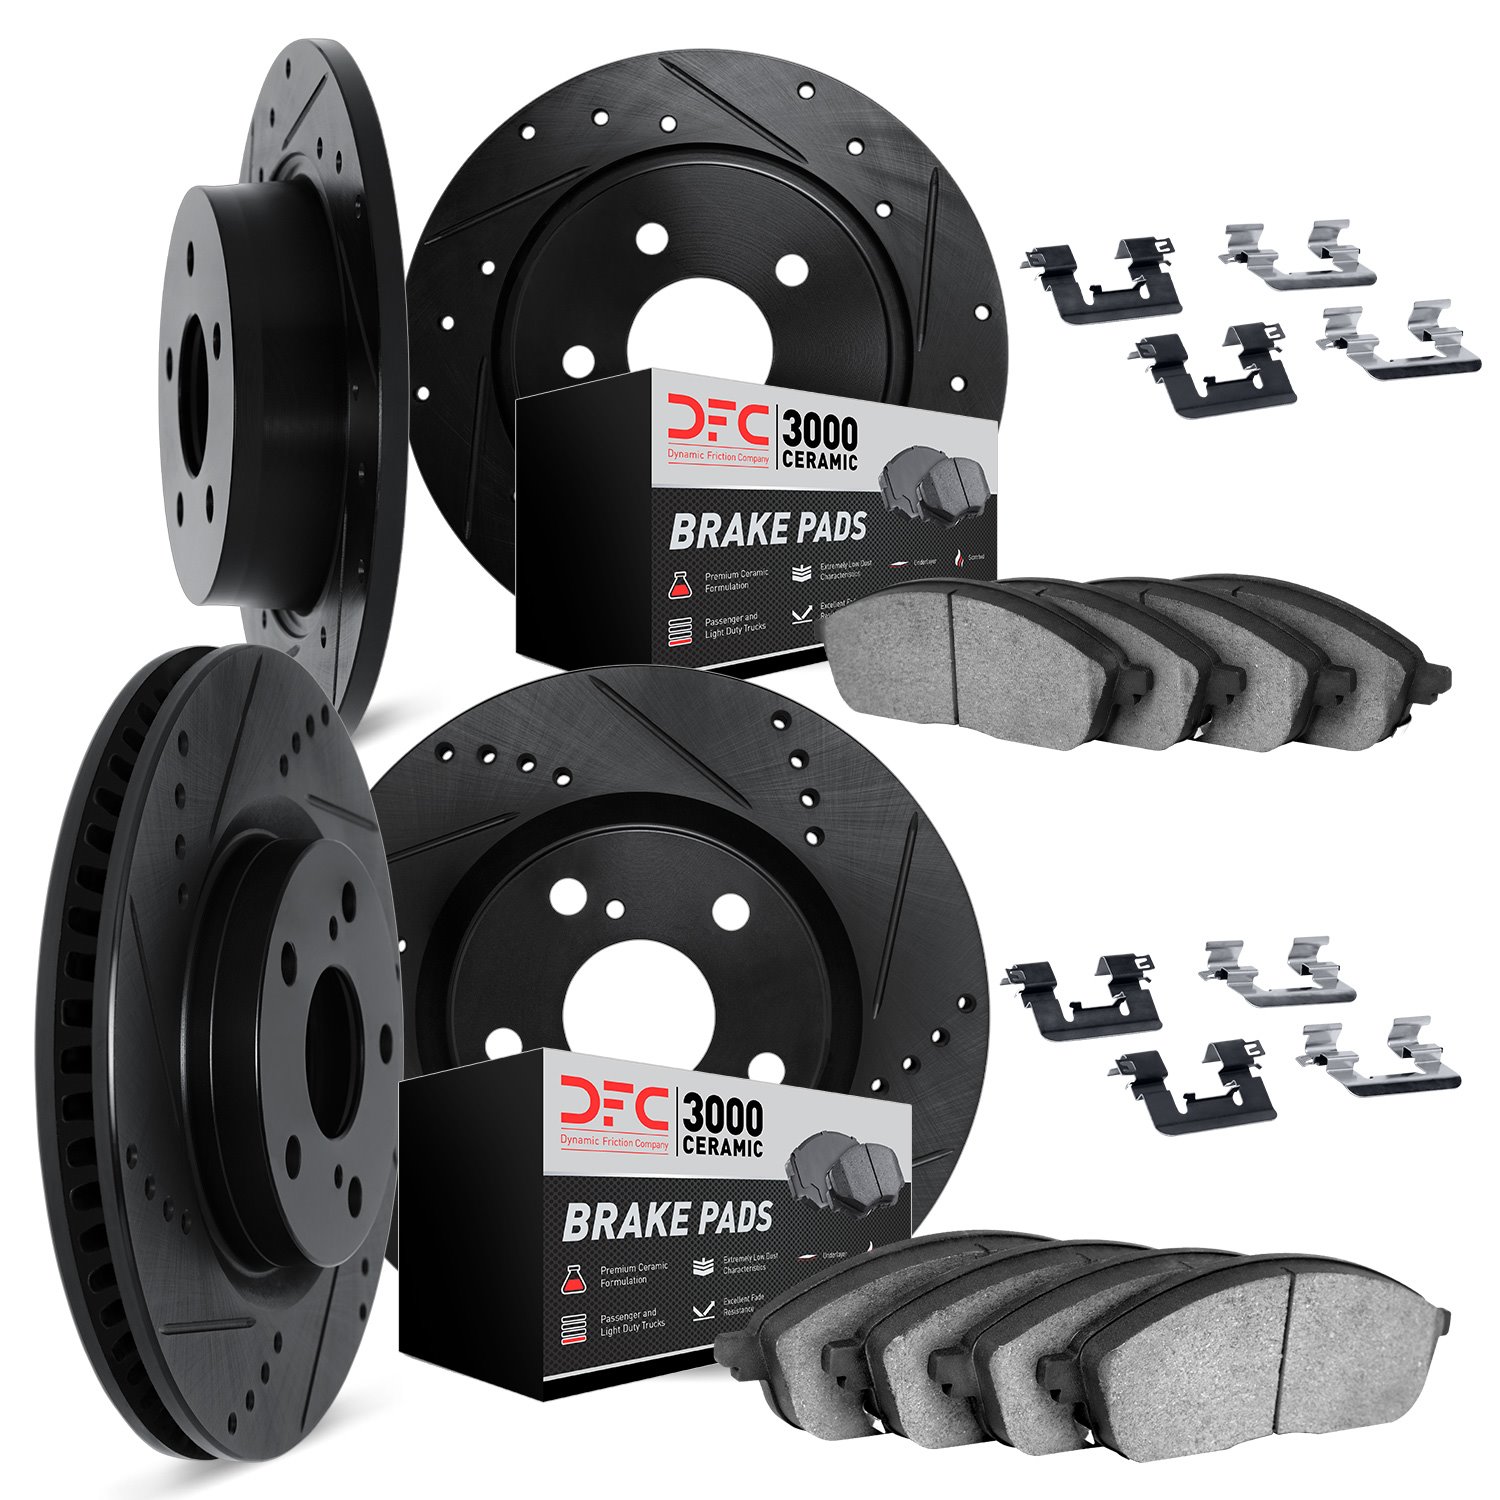 8314-72020 Drilled/Slotted Brake Rotors with 3000-Series Ceramic Brake Pads Kit & Hardware [Black], 2009-2015 Mitsubishi, Positi